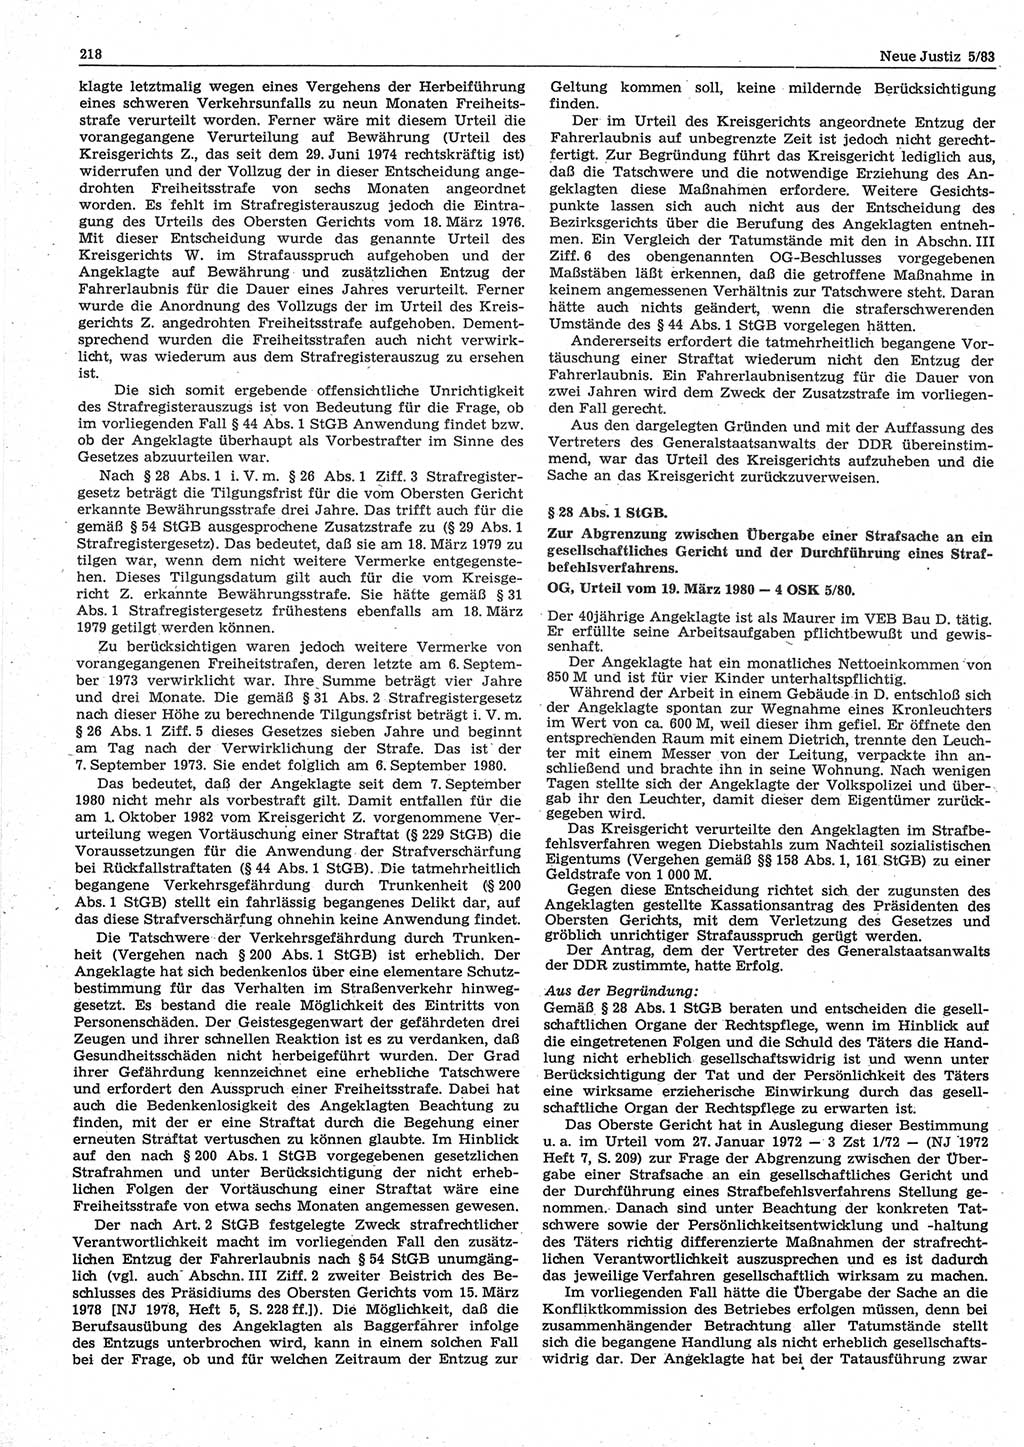 Neue Justiz (NJ), Zeitschrift für sozialistisches Recht und Gesetzlichkeit [Deutsche Demokratische Republik (DDR)], 37. Jahrgang 1983, Seite 218 (NJ DDR 1983, S. 218)